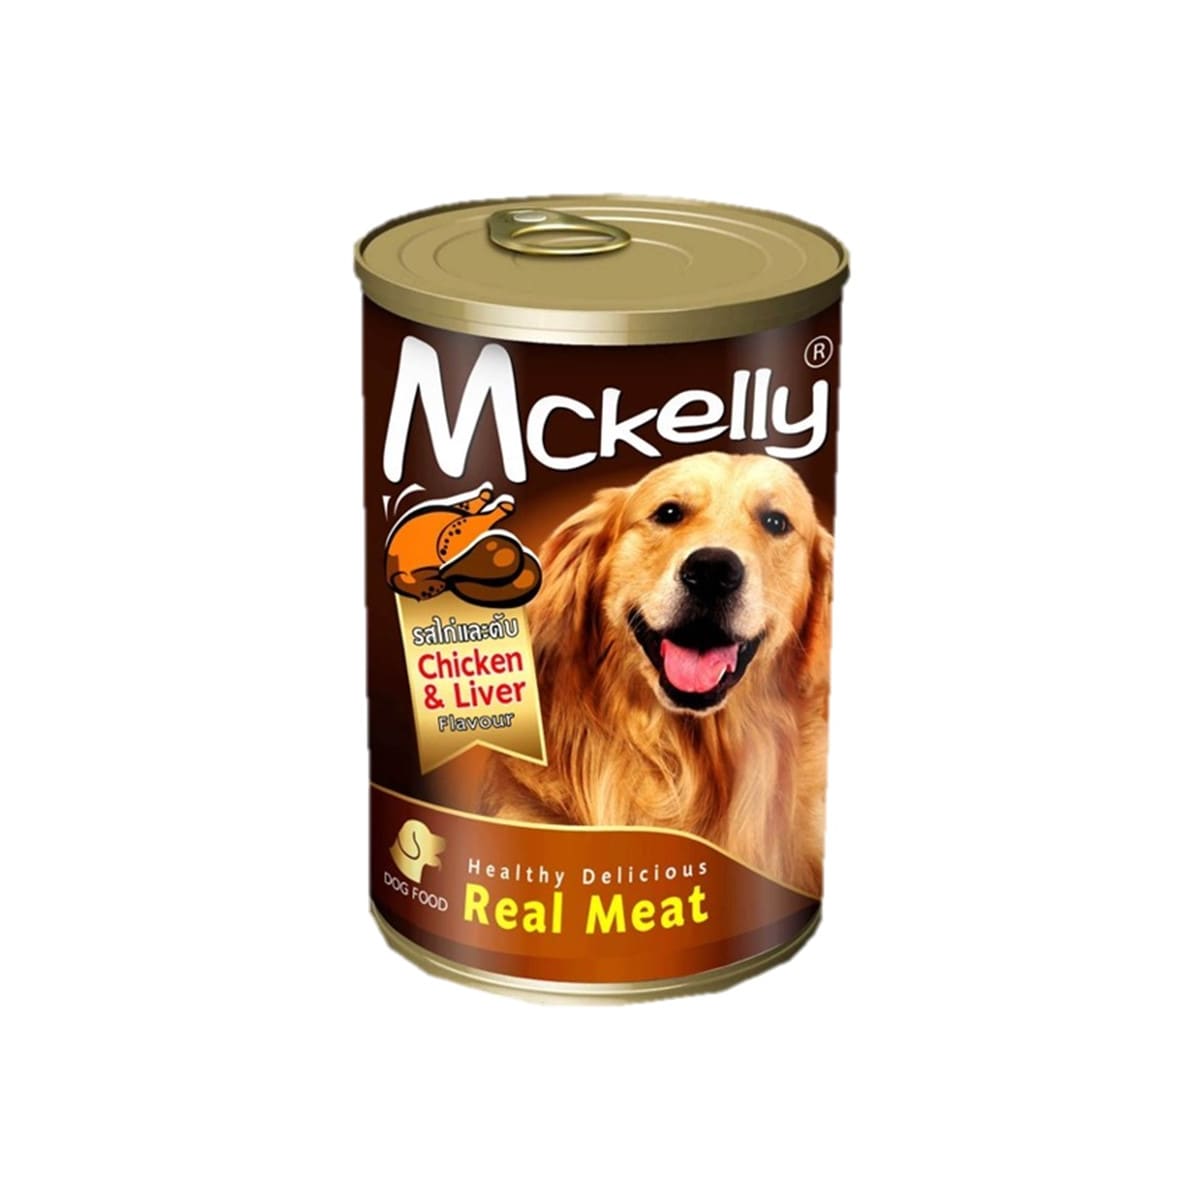 Mckelly แมคเคลลี่ อาหารเปียก แบบกระป๋อง สำหรับสุนัข สูตรไก่และตับ 400 g_1